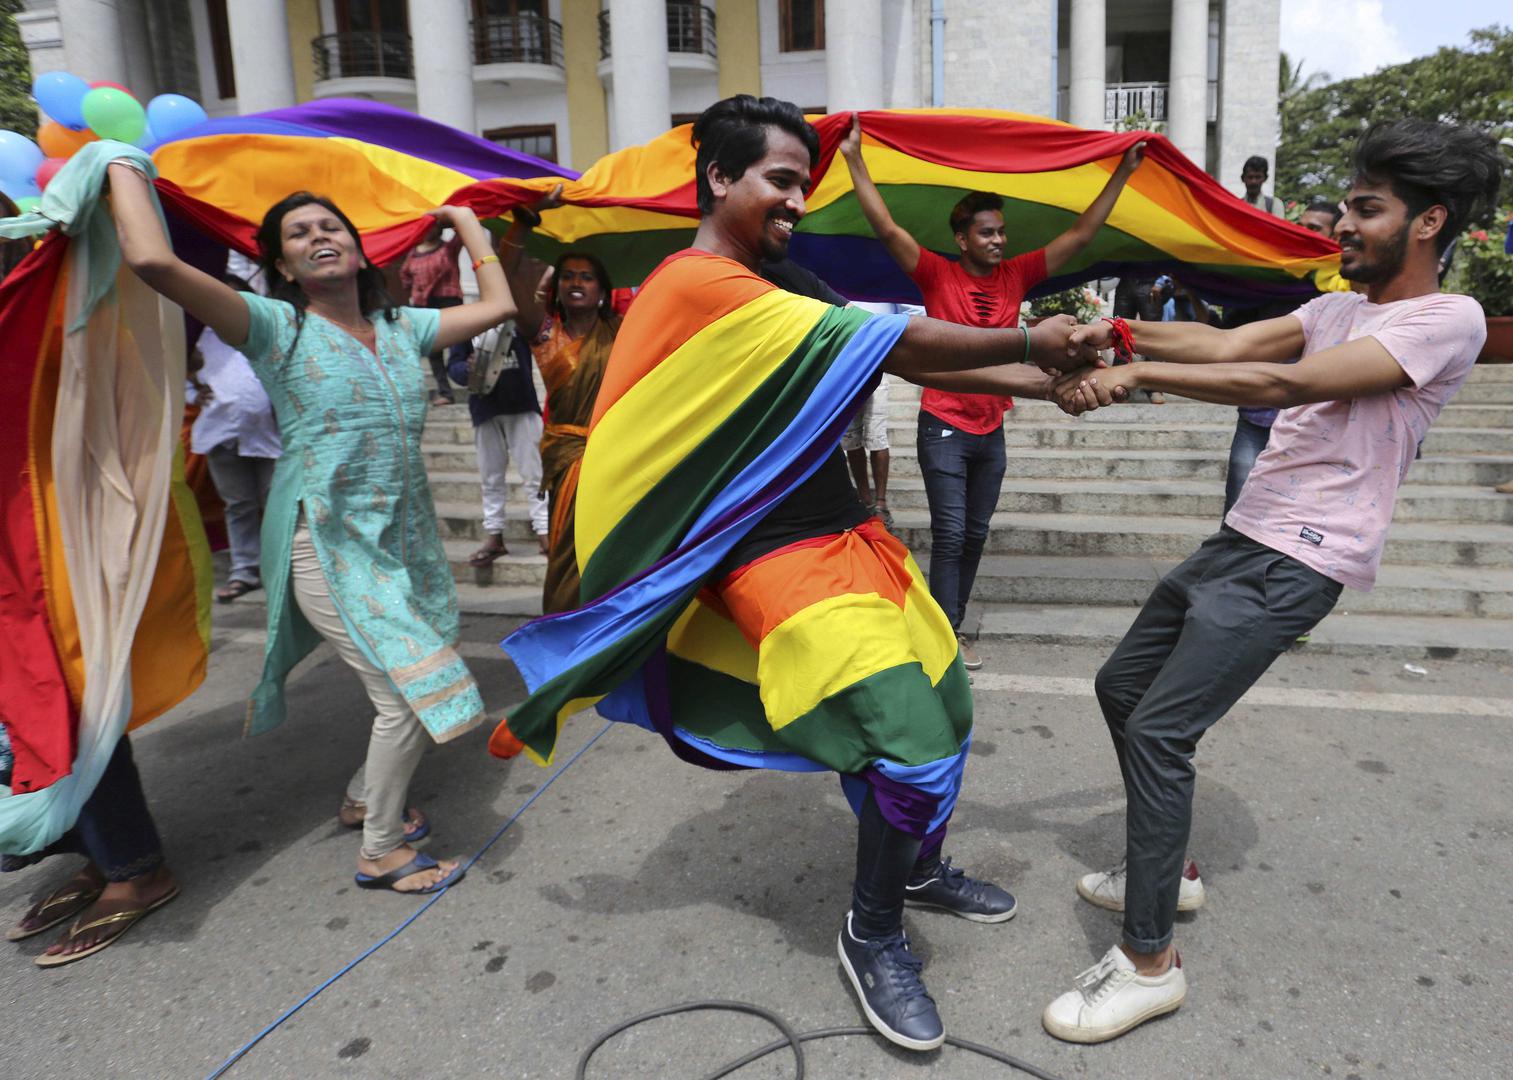 सुप्रीम कोर्ट द्वारा समलैंगिक संबंधों को अपराध ठहराने वाले औपनिवेशिक कानून को निरस्त किए जाने के फैसले पर 6 सितंबर, 2018 को बेंगलुरु, भारत में जश्न मनाते लोग.